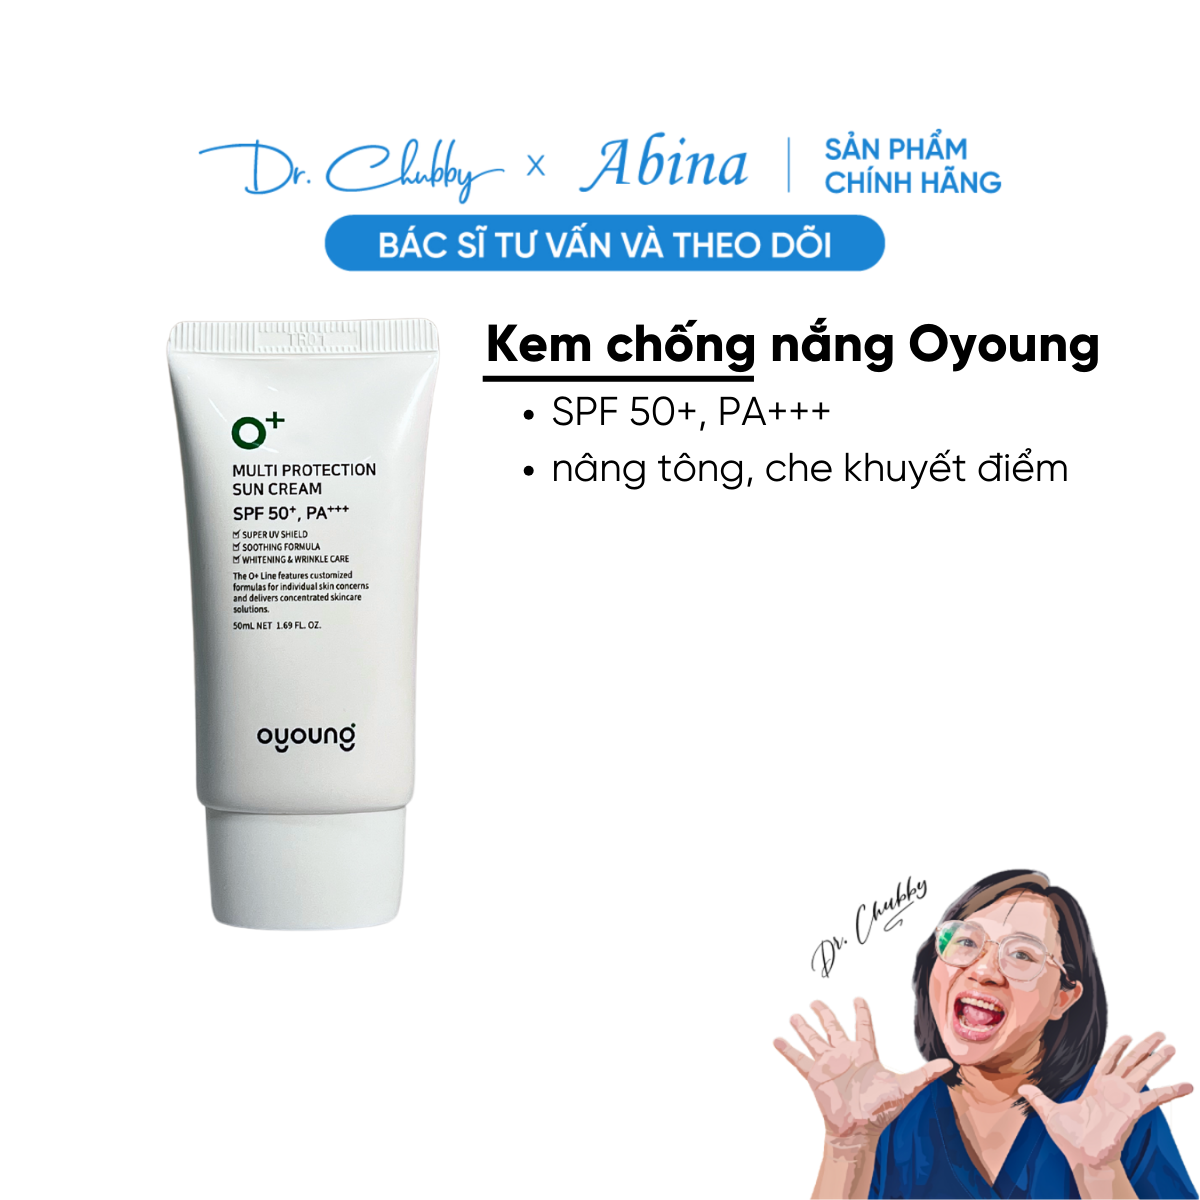 Kem chống nắng bảo vệ da Oyoung Multi Block Cream SPF 50 PA+++ - Dr Chubby